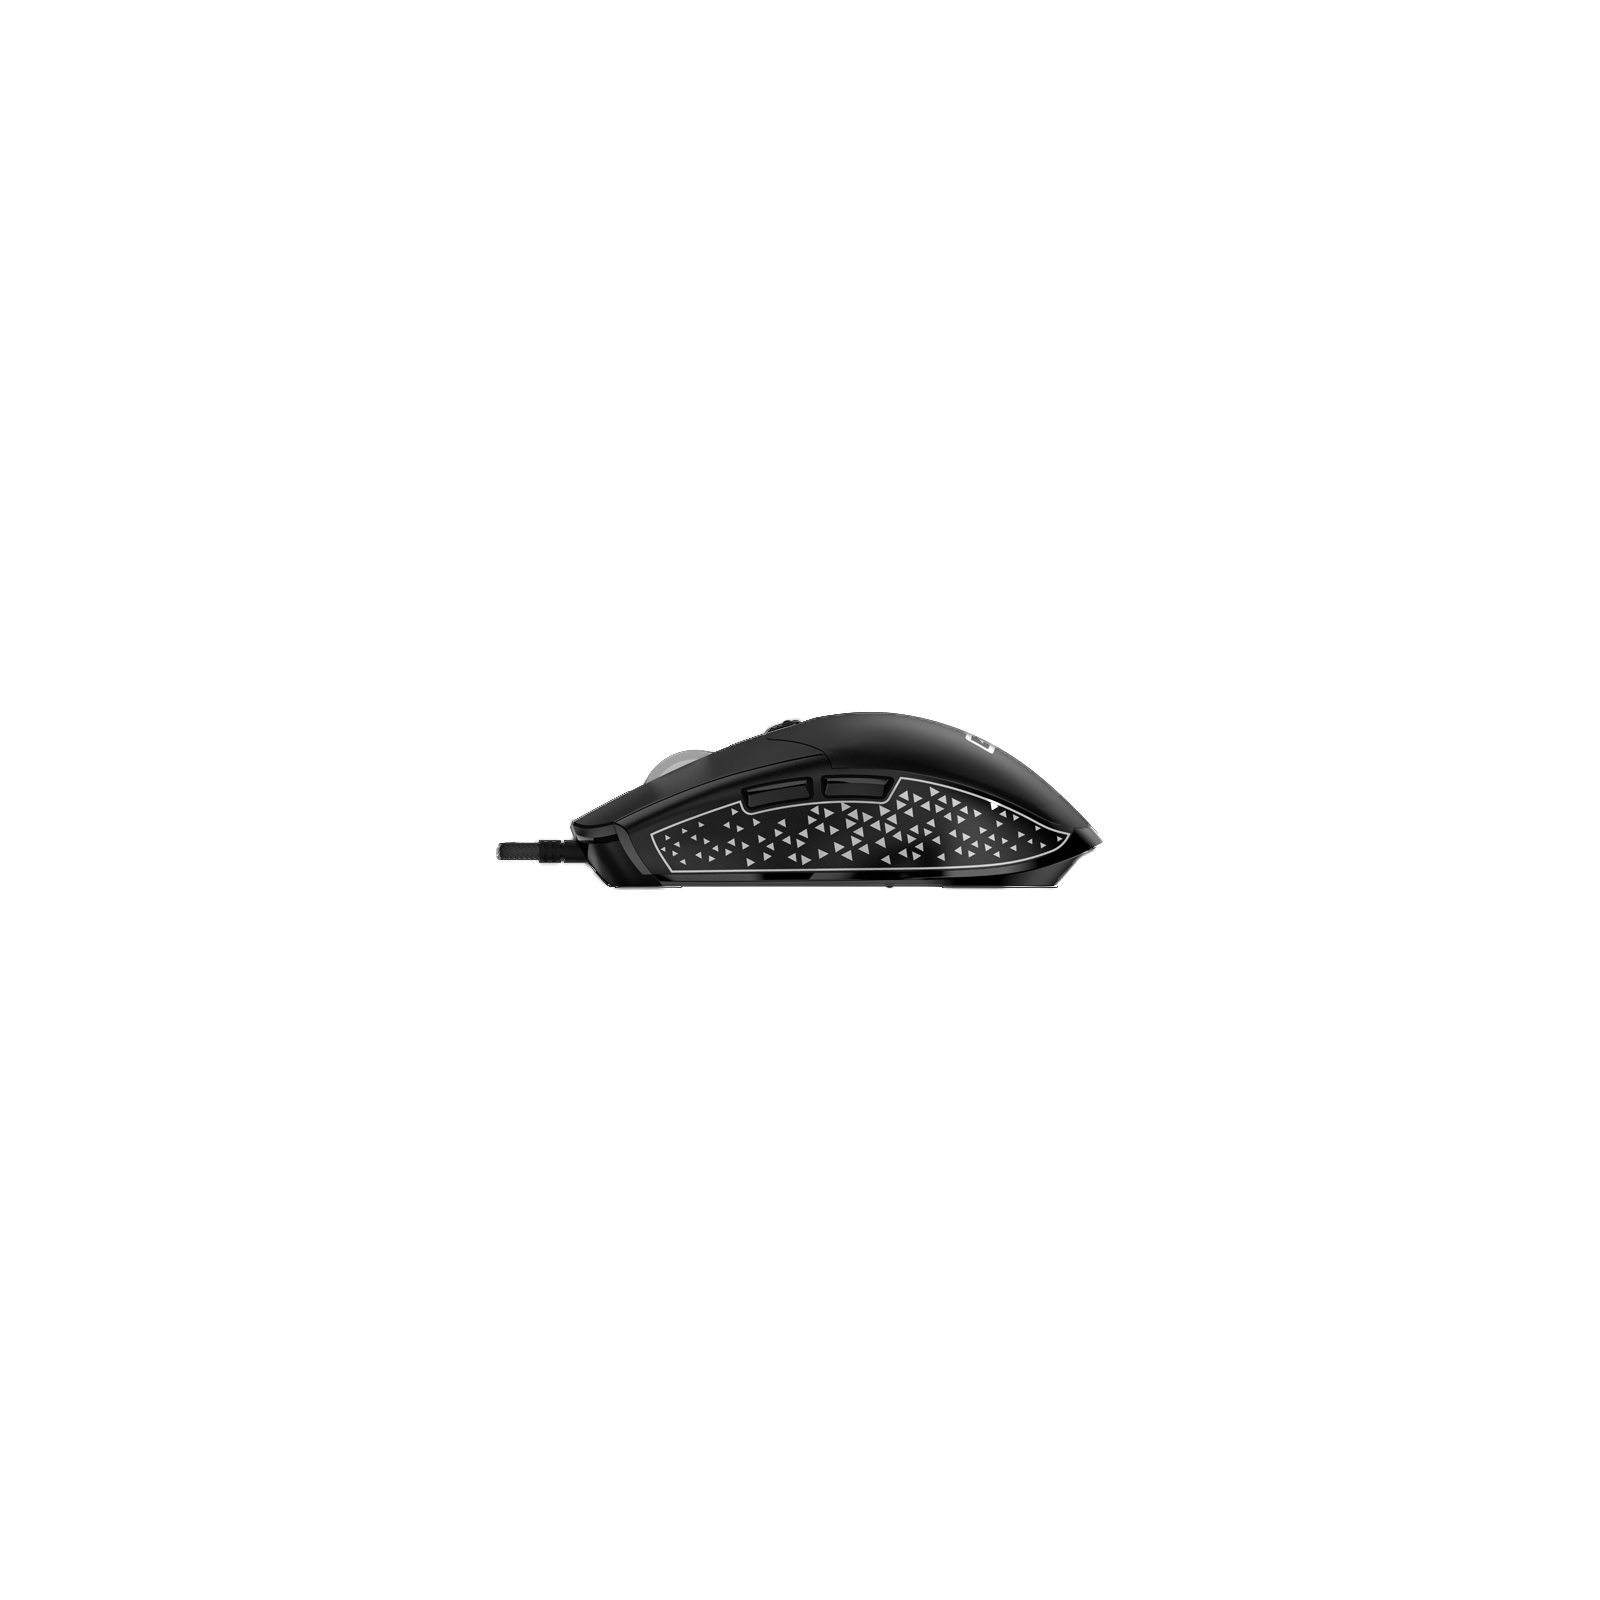 Мышка Genius Scorpion M705 USB Black (31040008400) изображение 3